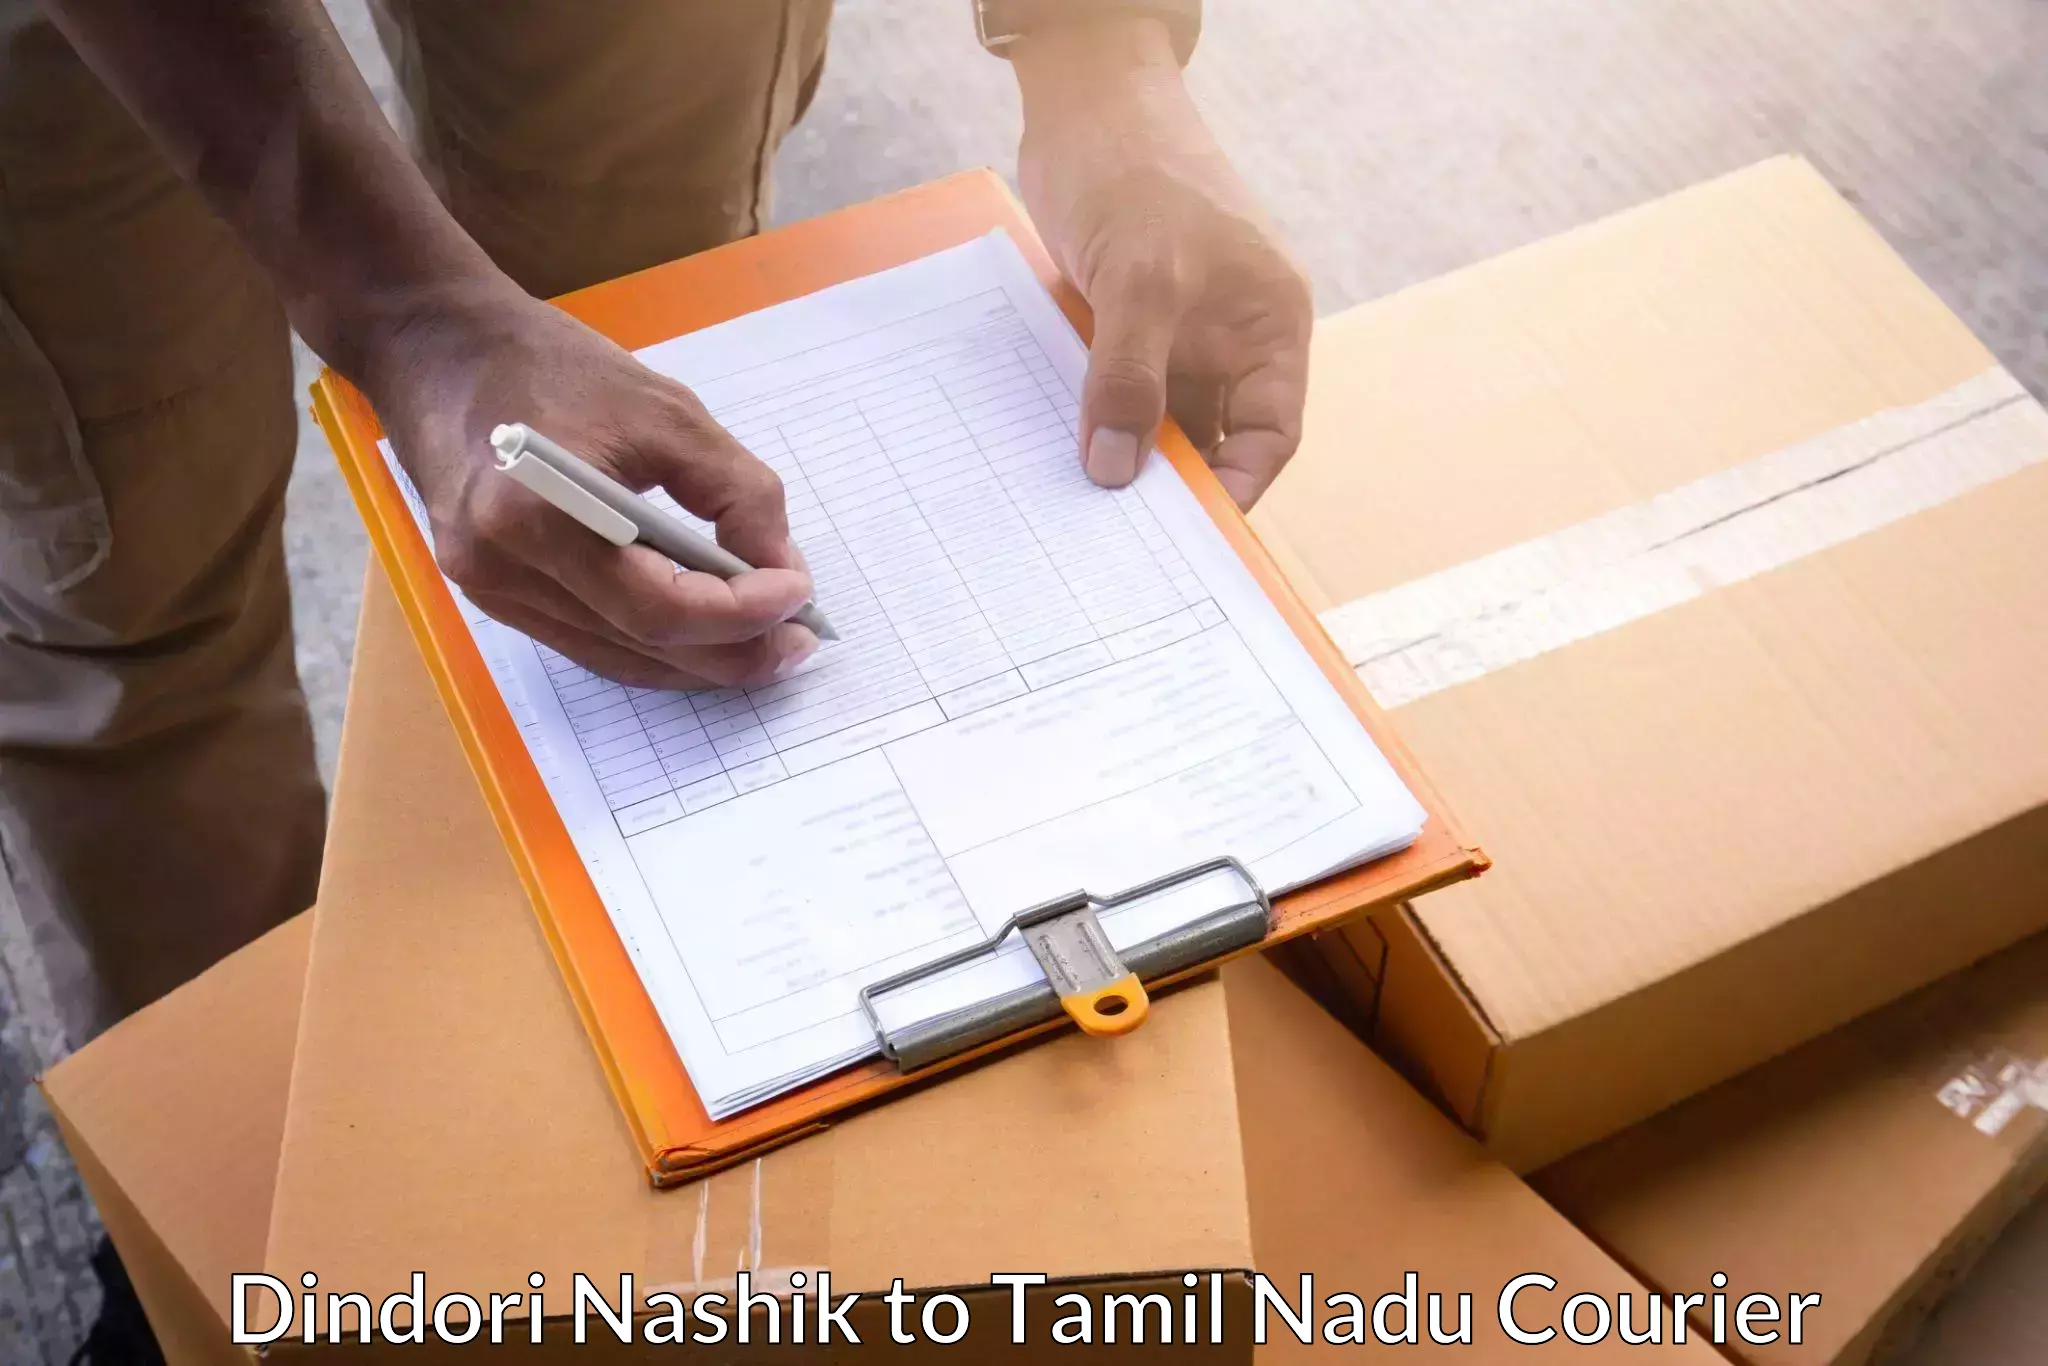 Optimized shipping routes Dindori Nashik to Chennai Port